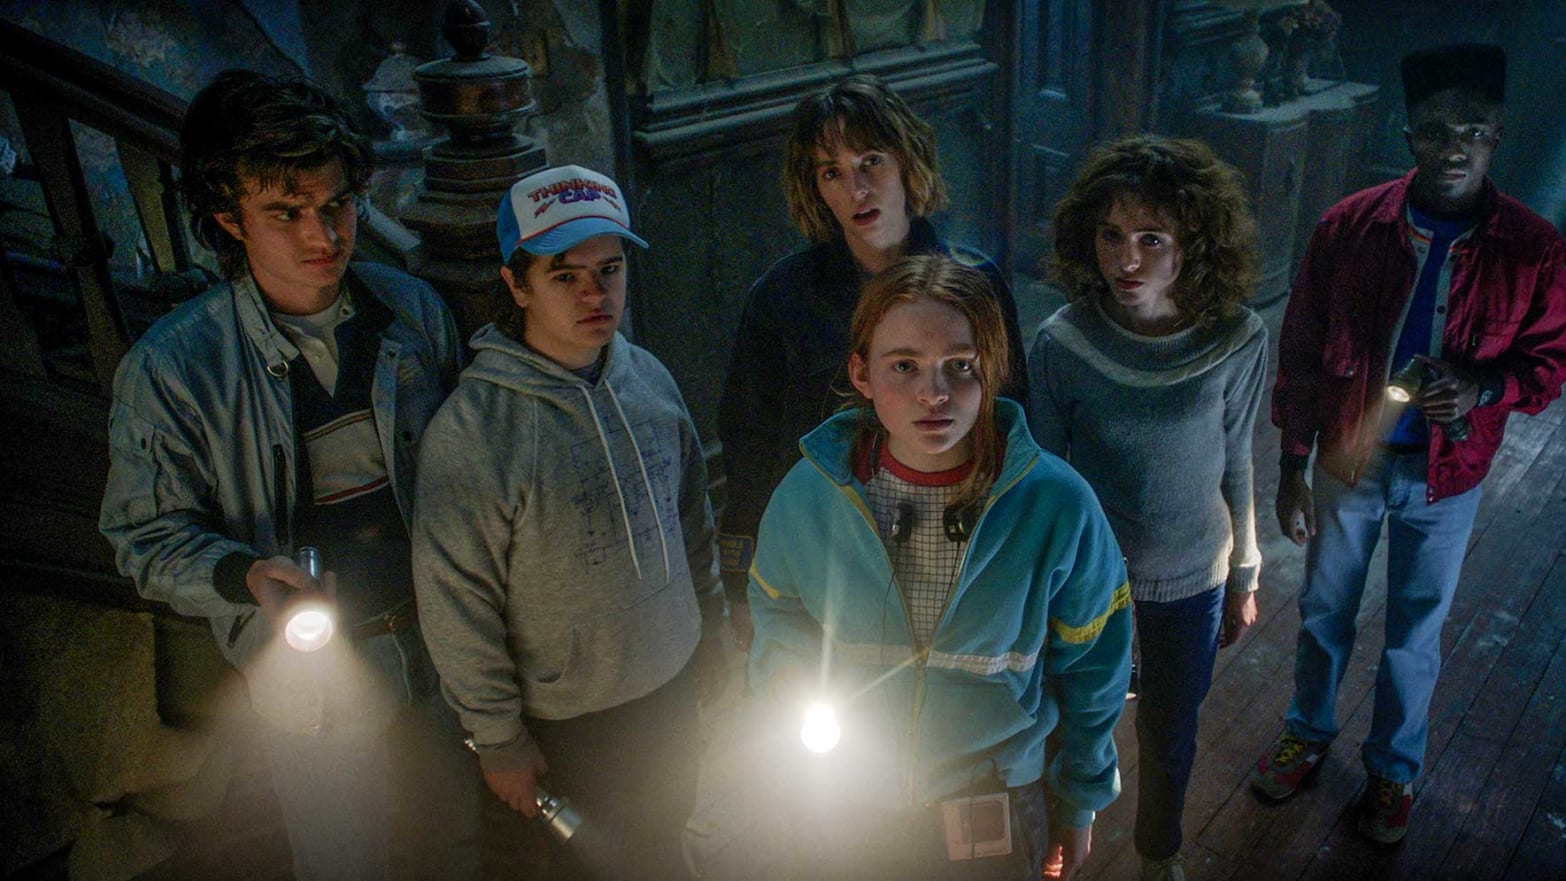 Stranger Things 4' Trailer Volume 2: Netflix releases the teaser for the  season finale